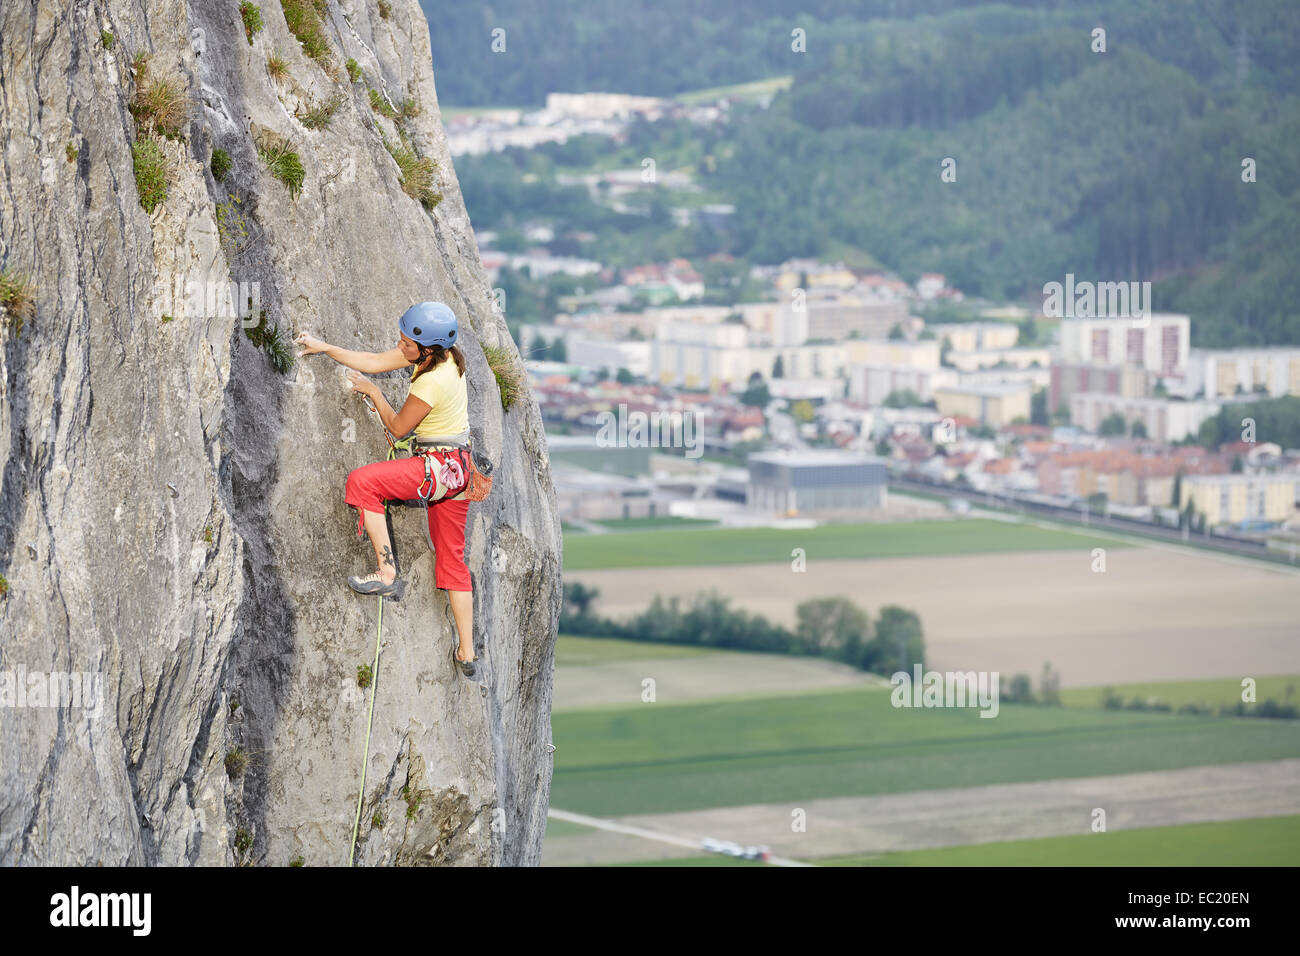 Freeclimber with helmet climbing on a rock face, Martinswand, gallery, Innsbruck, Tyrol, Austria Stock Photo